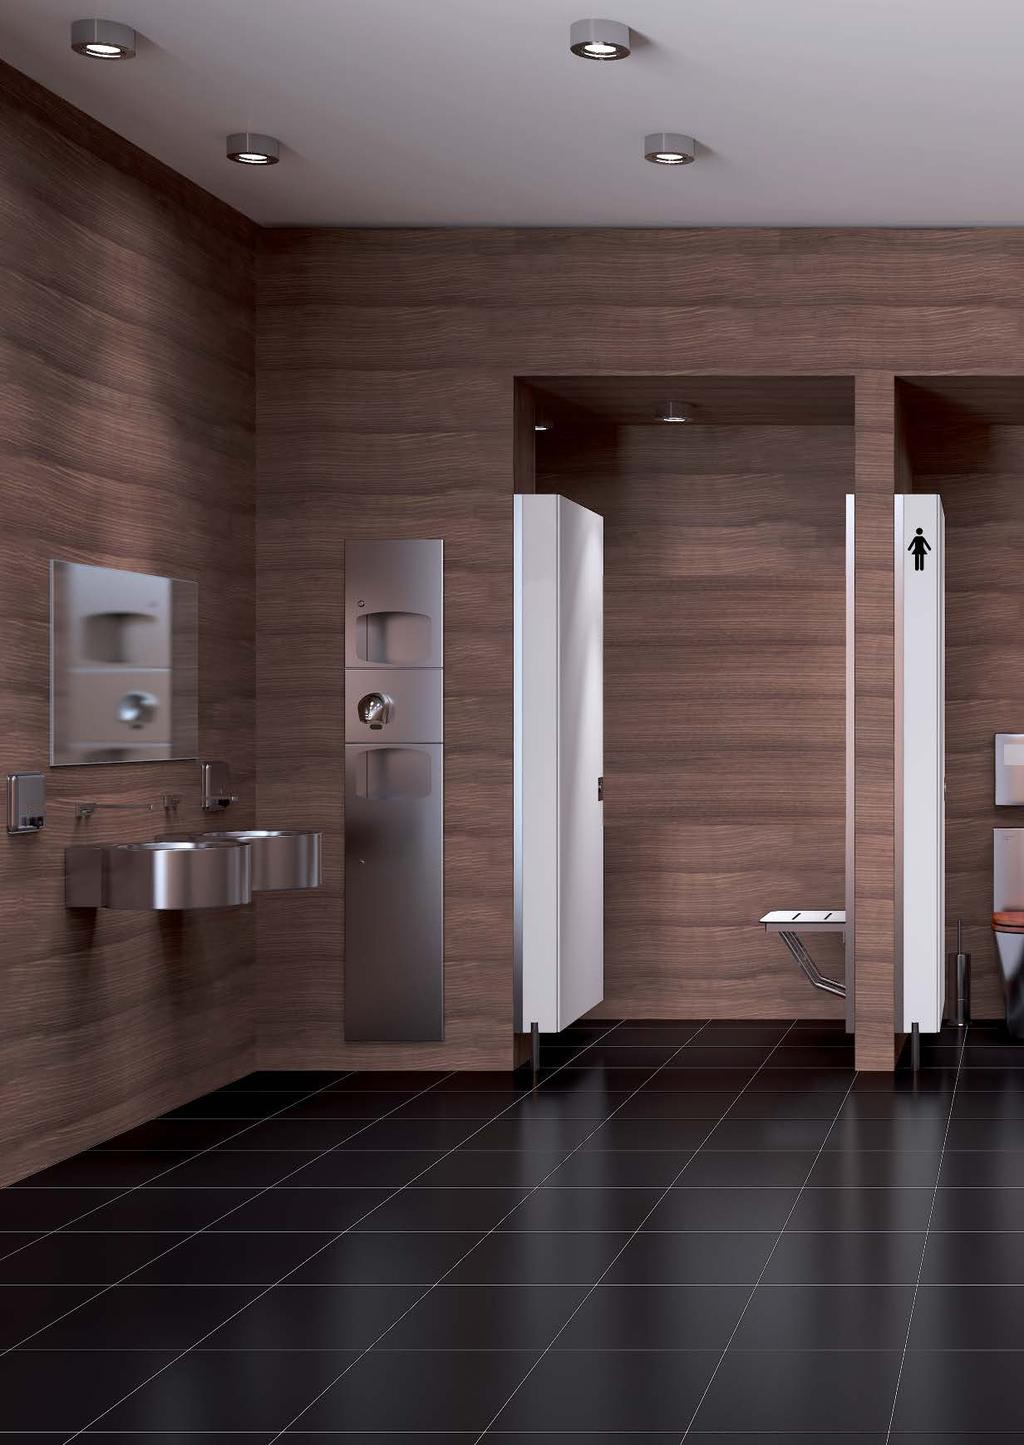 UNIDADES COMBINADAS Múltiples soluciones para equipar baños colectivos ocupando el mínimo espacio.